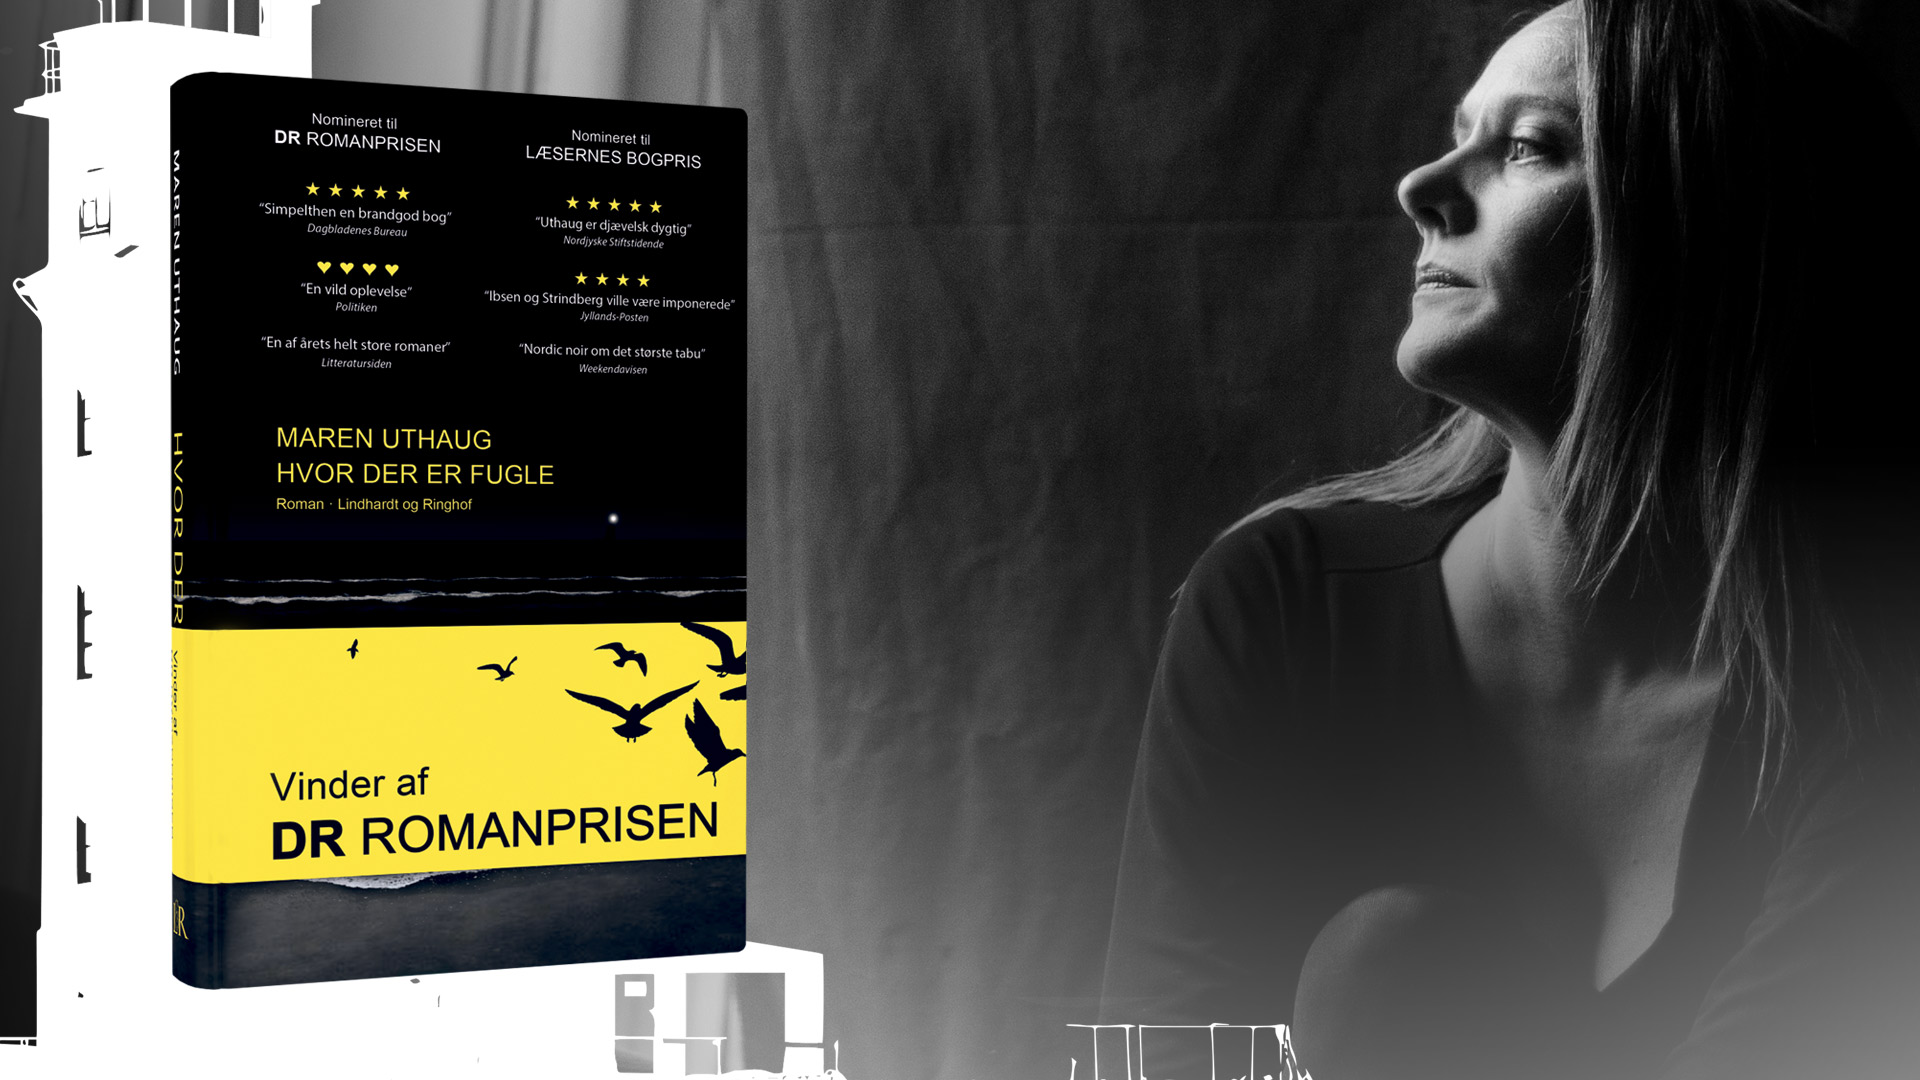 Maren Uthaug, Hvor der er fugle, DR Romanprisen 2018